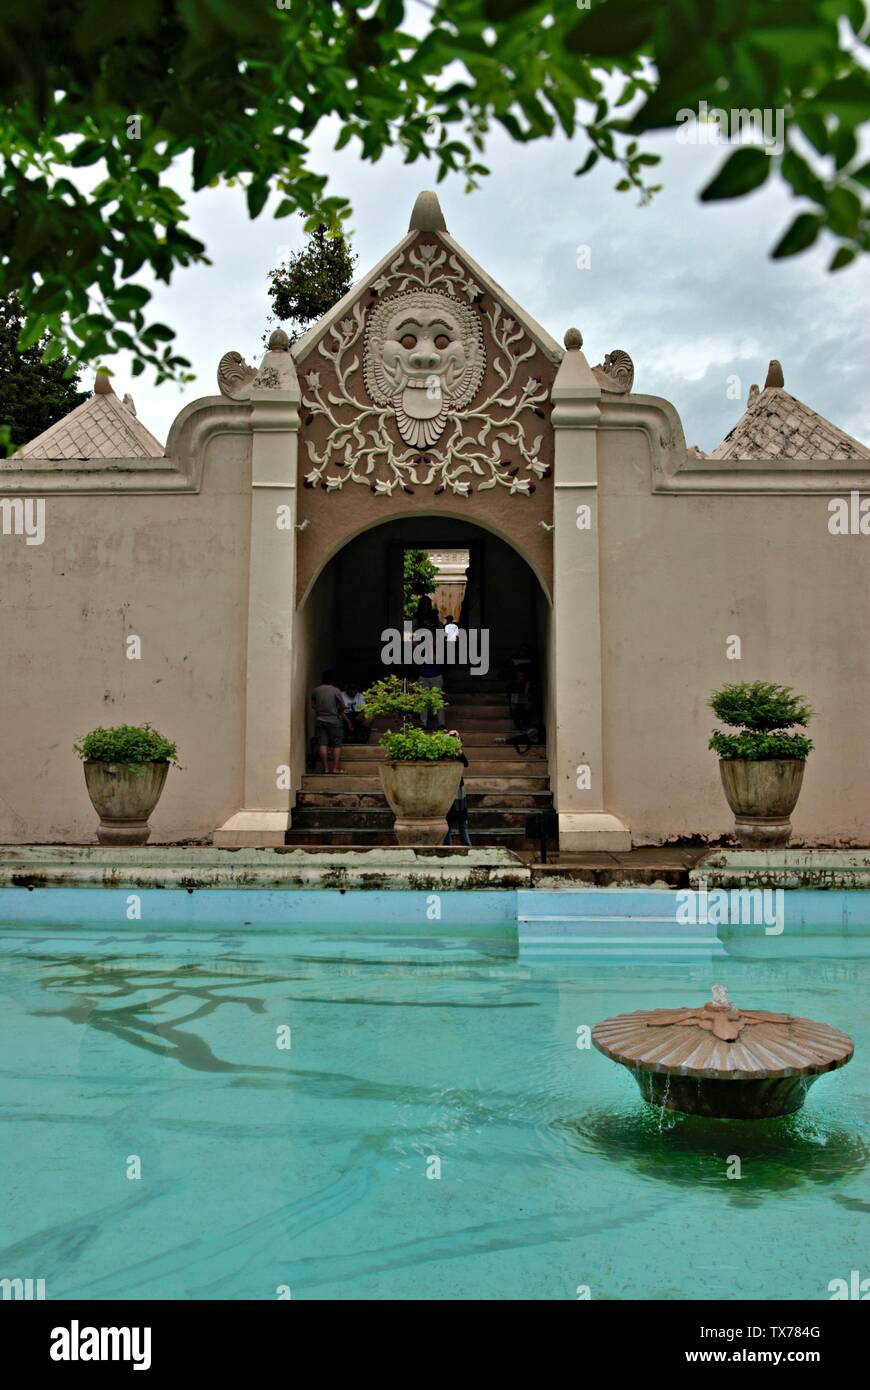 La piscina e il cancello di Taman Sari. Taman Sari Castello d'acqua, anche noto come Taman Sari è il sito di un ex giardino reale del sultanato di Yogyakarta. Foto Stock